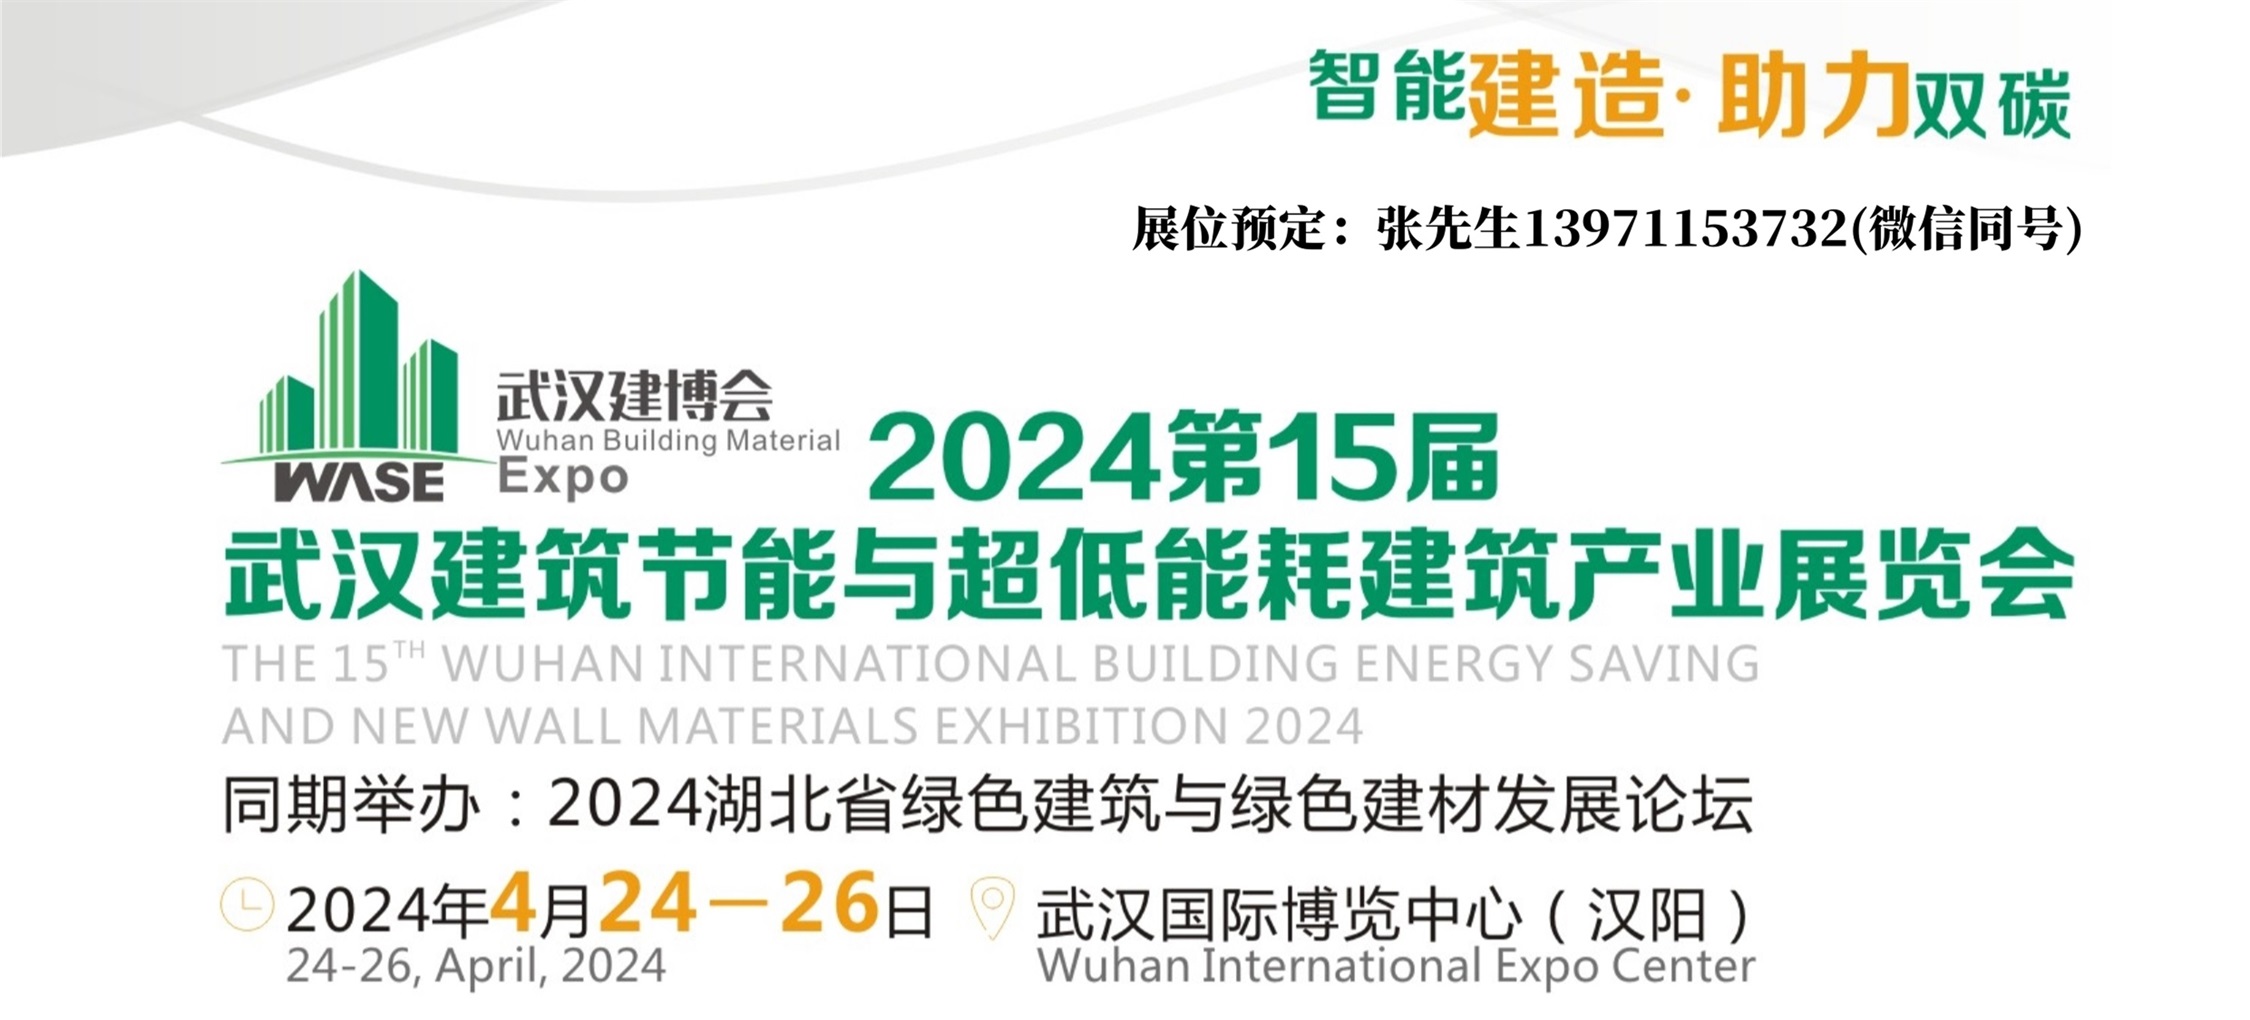 2024武汉建筑节能展封面 - 副本.jpg